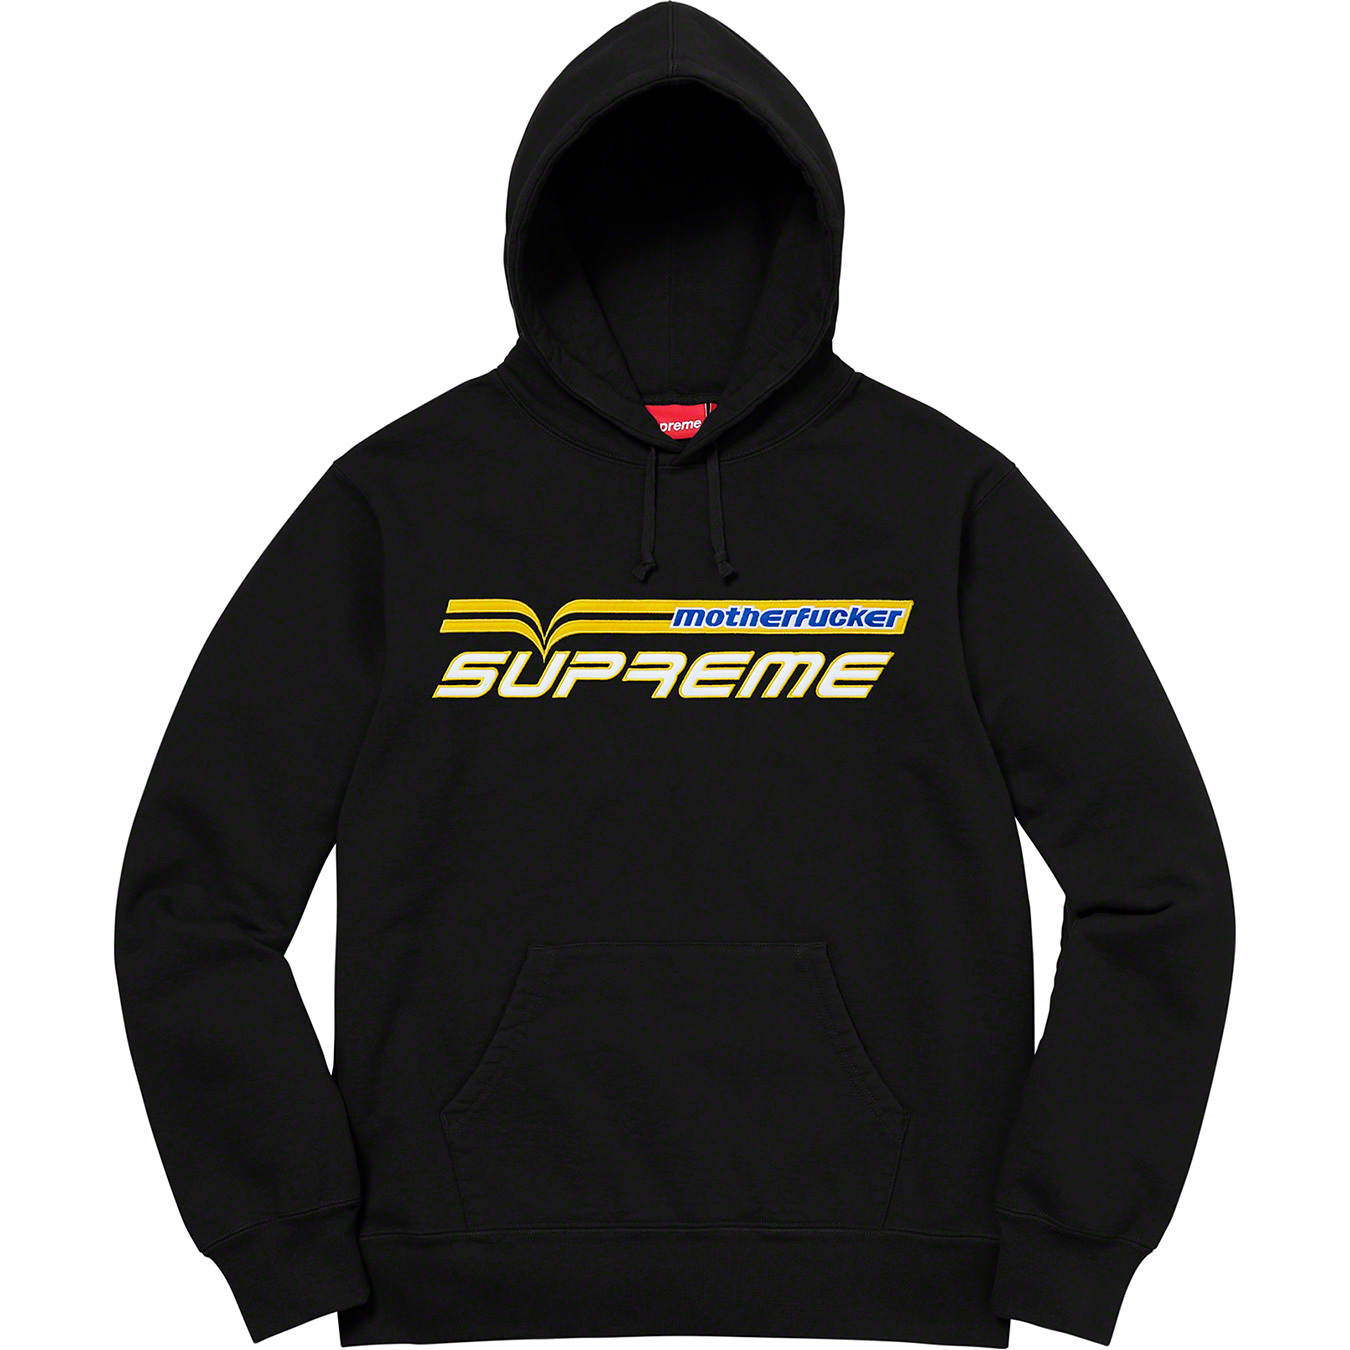 Supreme Motherfucker Hooded Sweatshirt